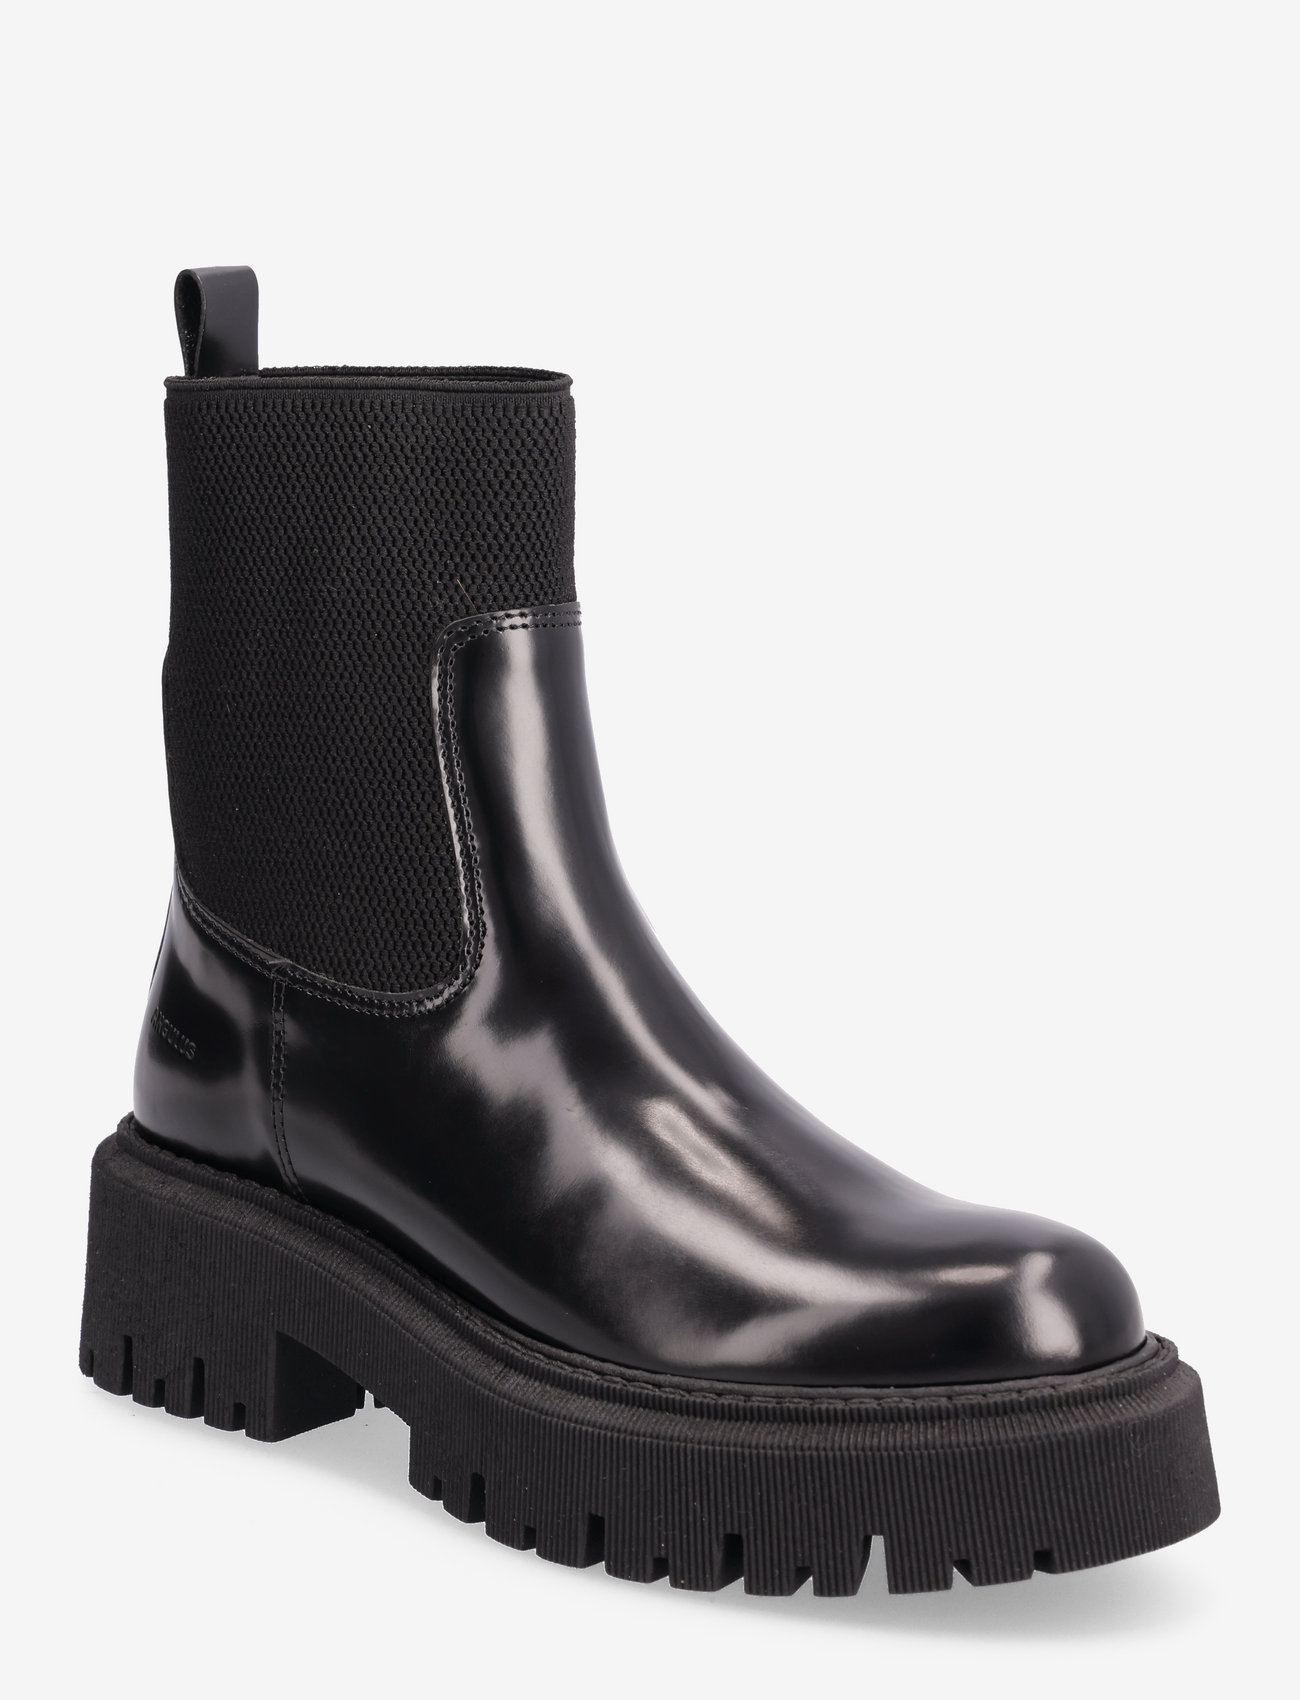 ANGULUS - Boots - flat - flate ankelstøvletter - 1425/053 black/black - 0